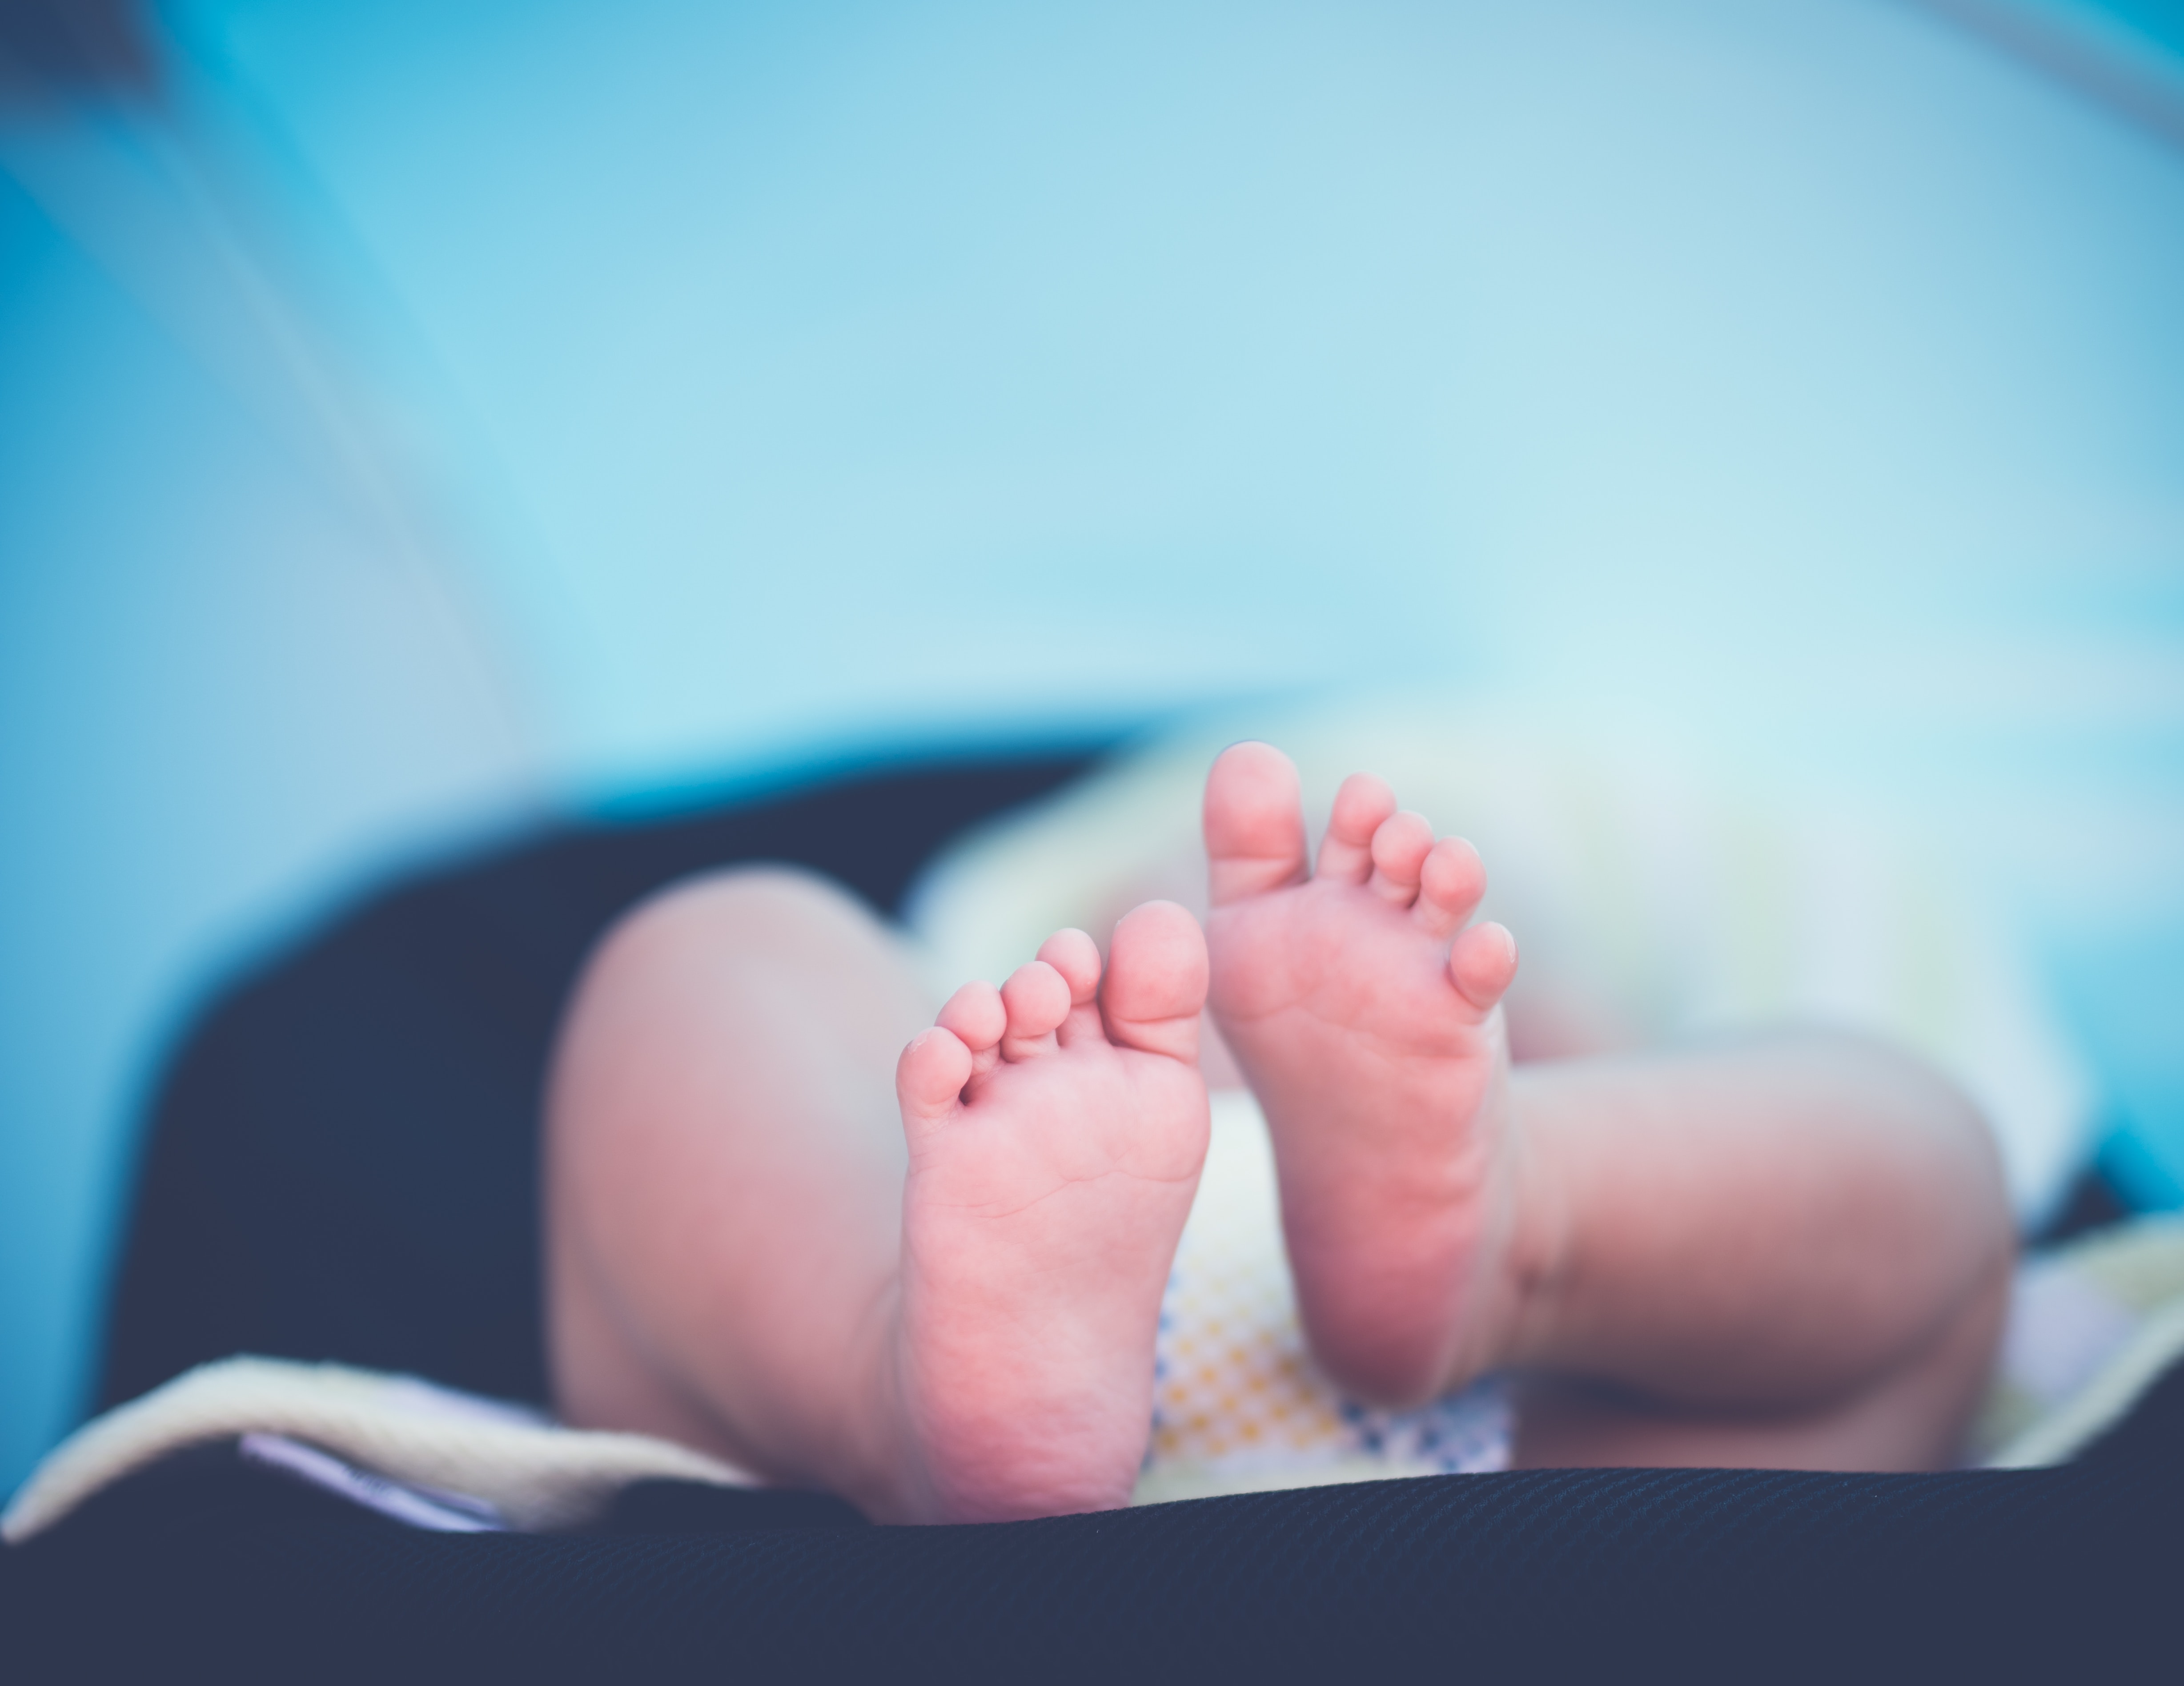 A newborn's little feet